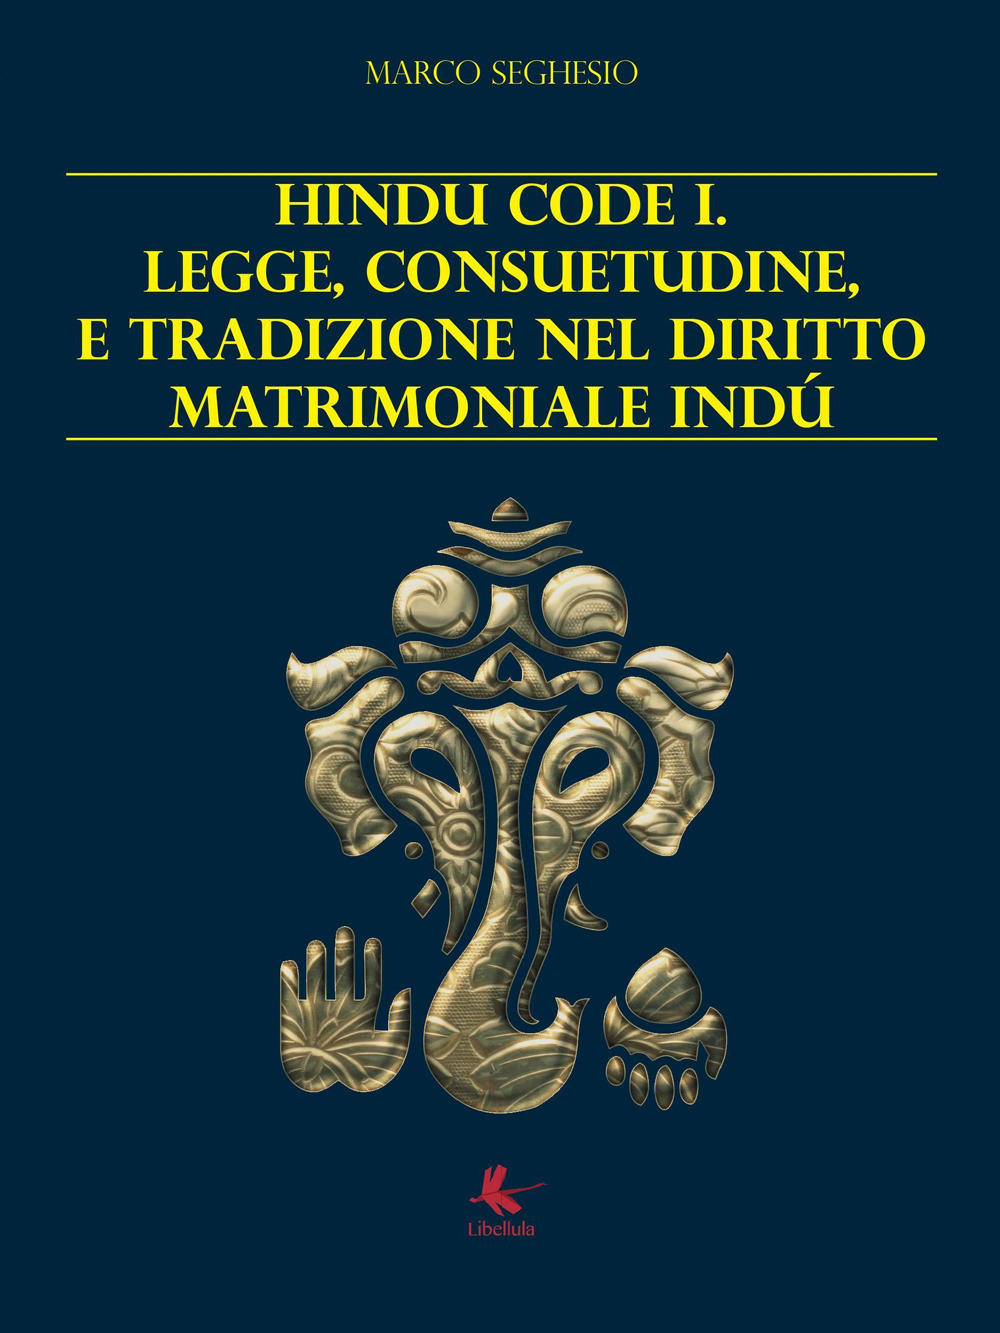 Image of Hindu code 1. Legge, consuetudine e tradizione nel diritto matrimoniale indù